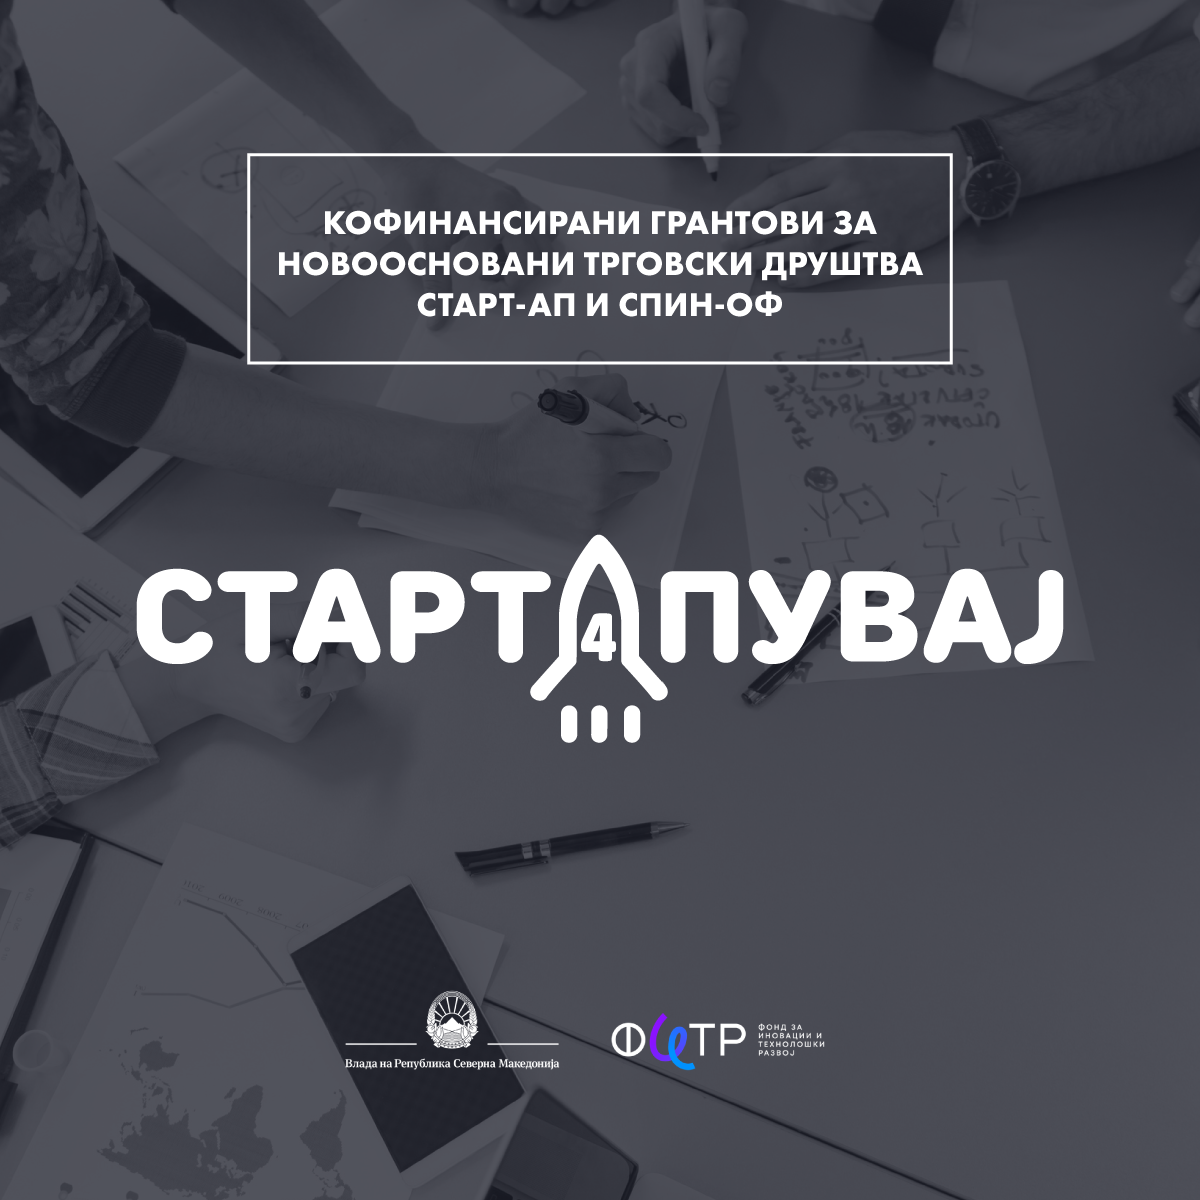 ФИТР: Нов јавен повик Стартапувај 4, преку кој се обезбедува 2 милиони евра поддршка за македонскиот стартап еко систем